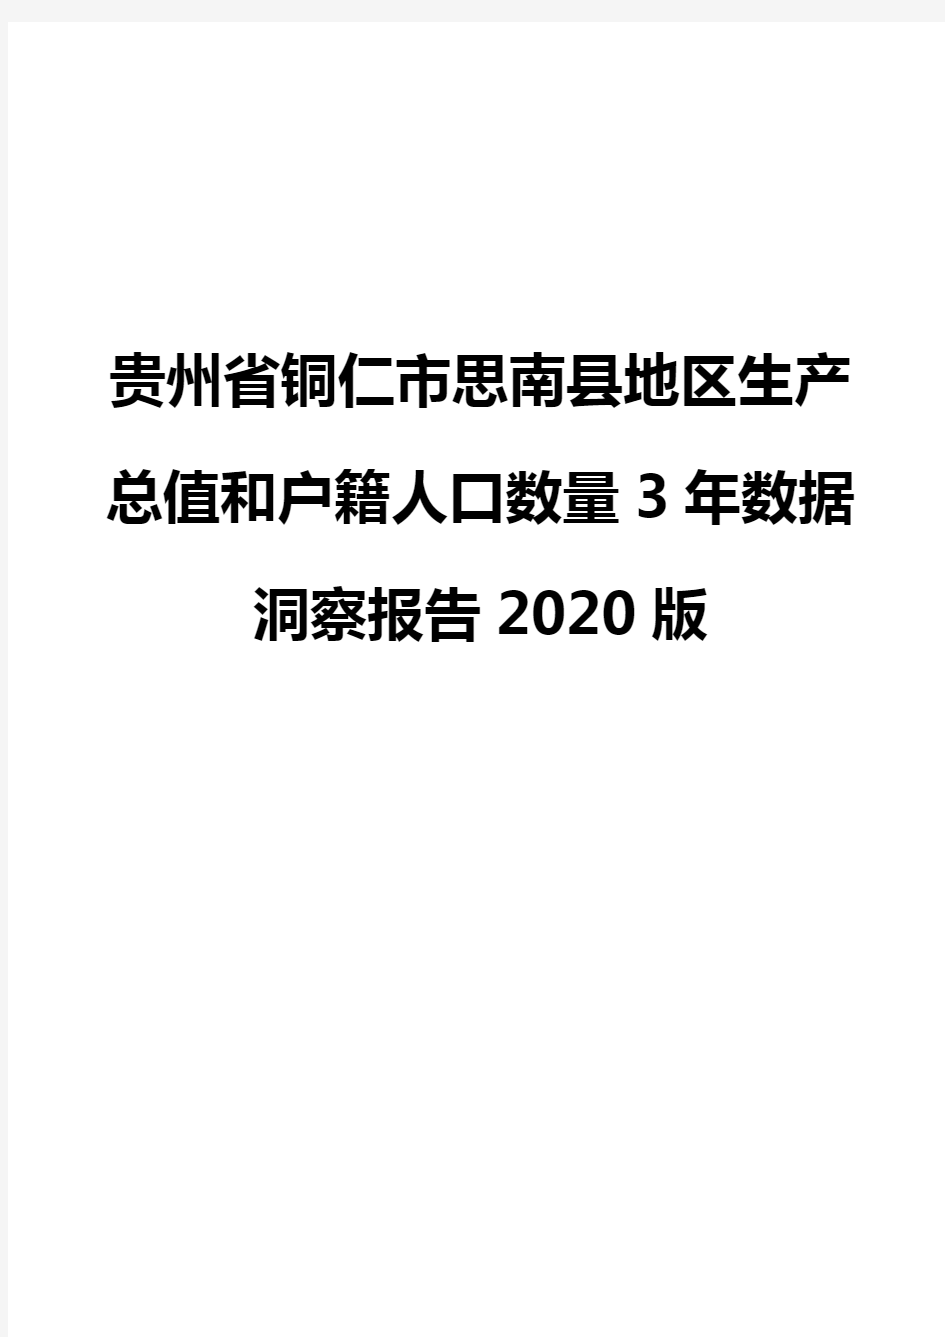 贵州省铜仁市思南县地区生产总值和户籍人口数量3年数据洞察报告2020版